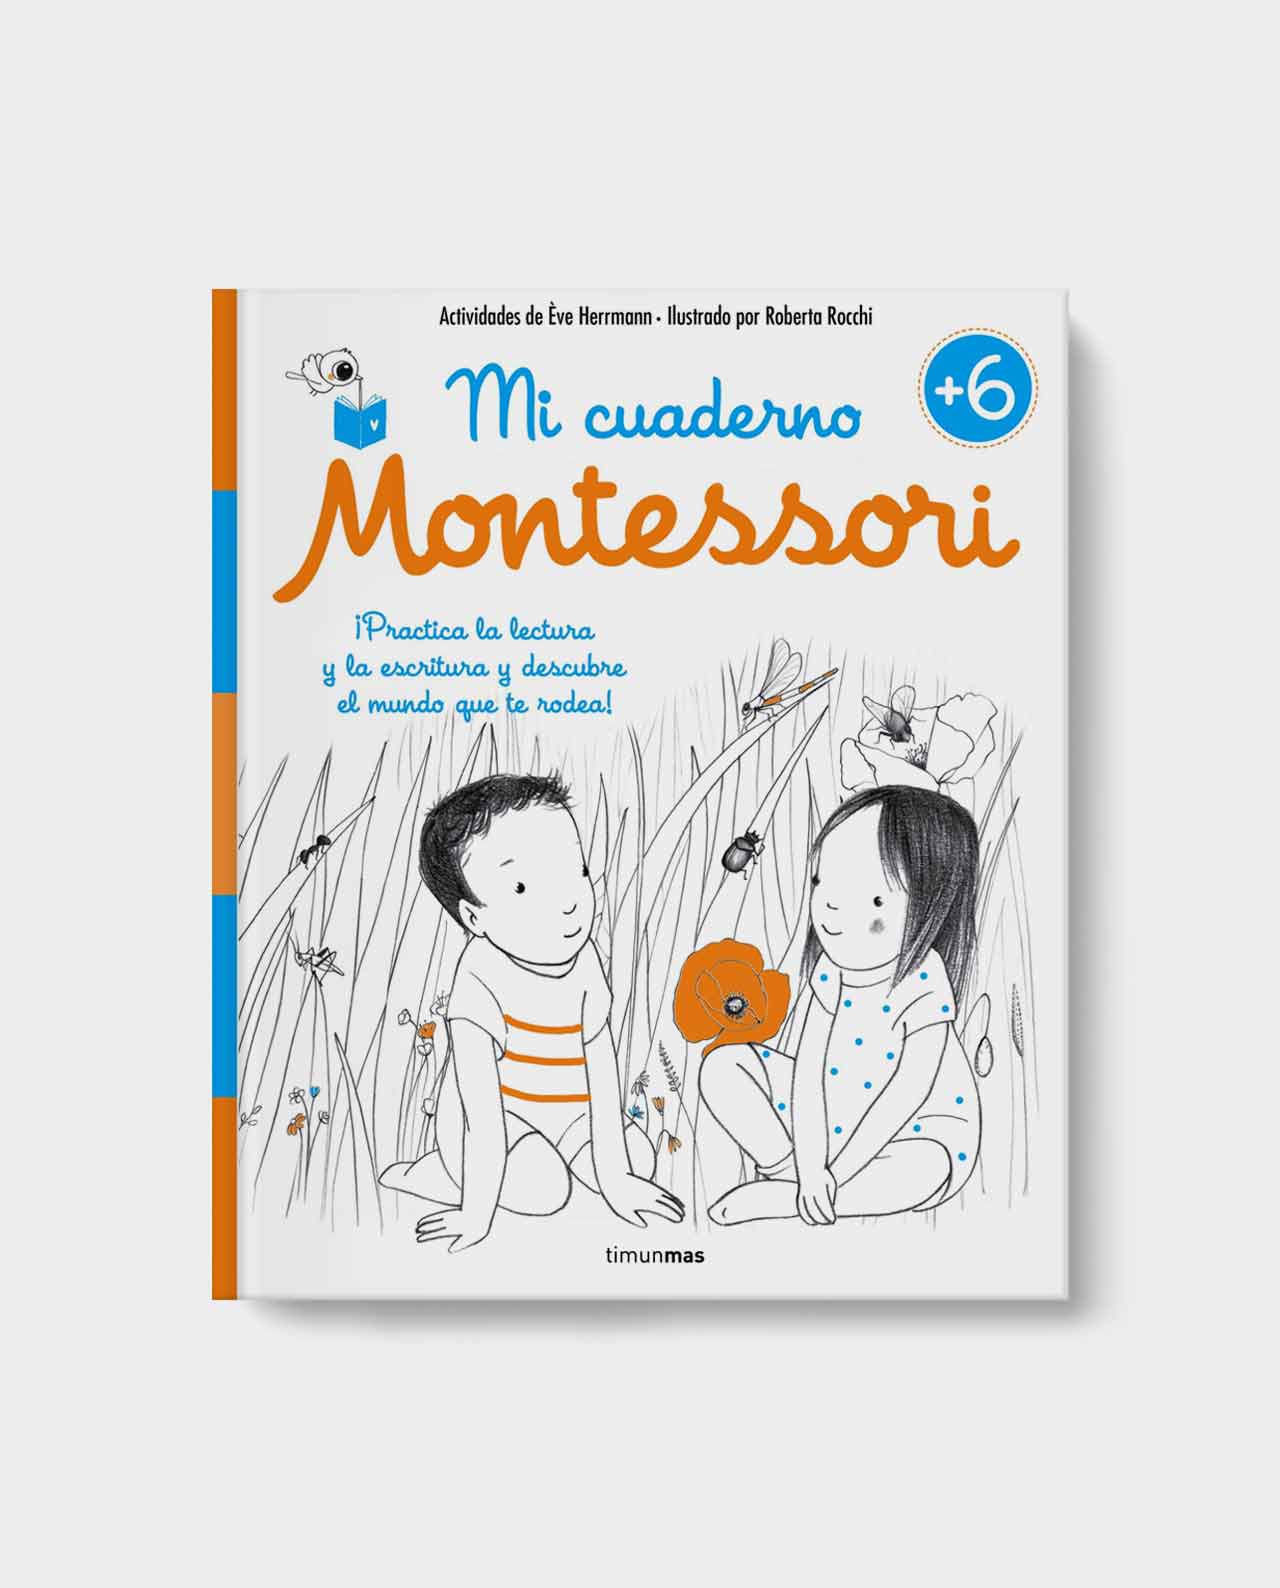 https://lacolmenacrianza.com/wp-content/uploads/2020/05/la-colmena-libro-mi-cuaderno-montessori-6-01.jpg